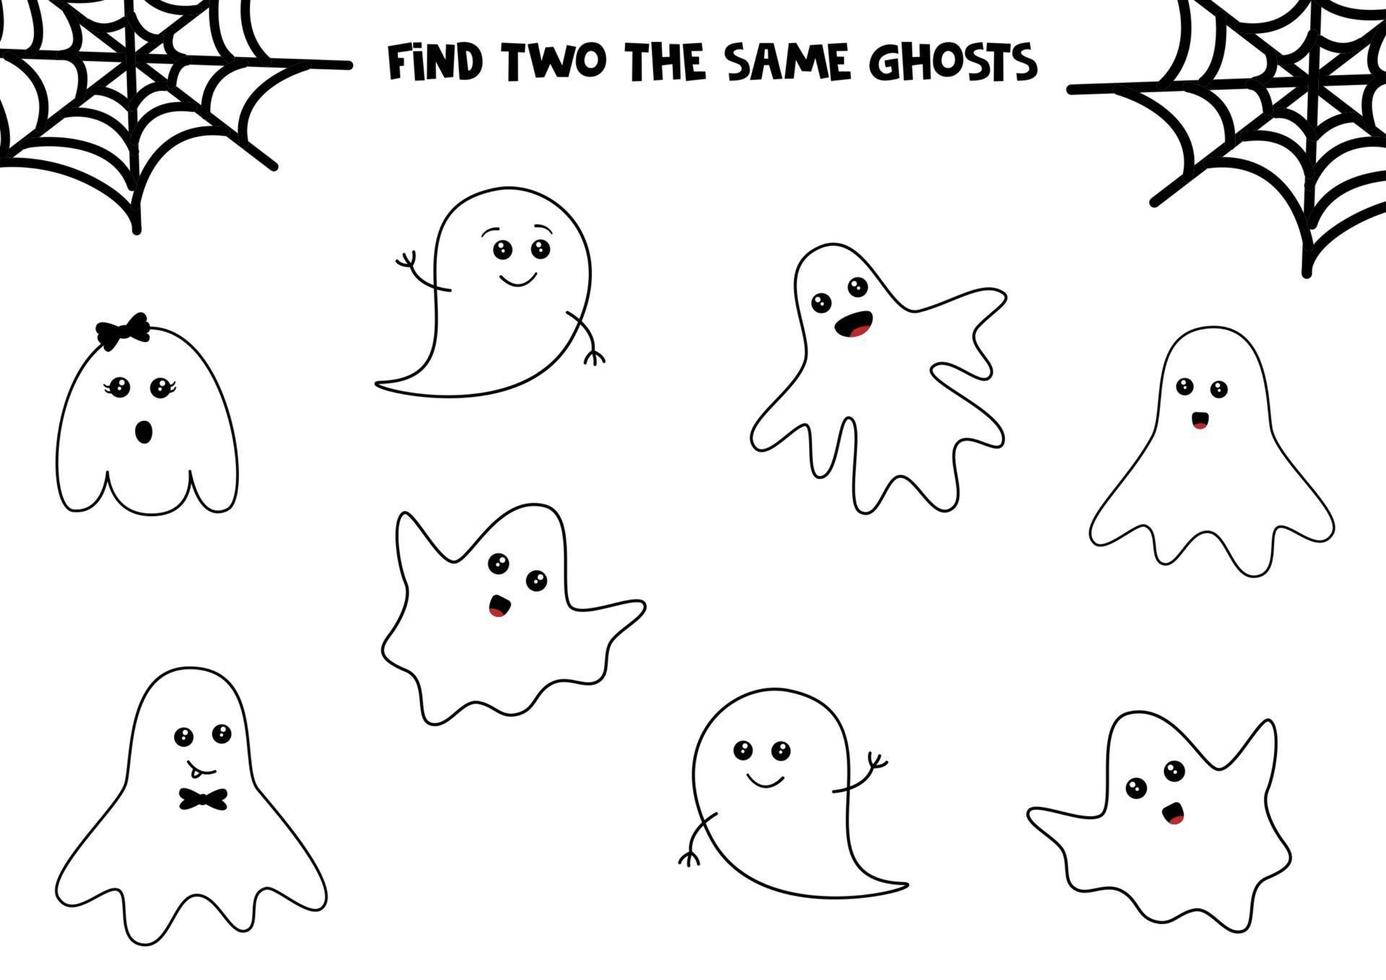 ensemble de fantômes d'halloween mignons. trouver deux mêmes fantômes. jeu éducatif pour les enfants. feuille de calcul imprimable. vecteur